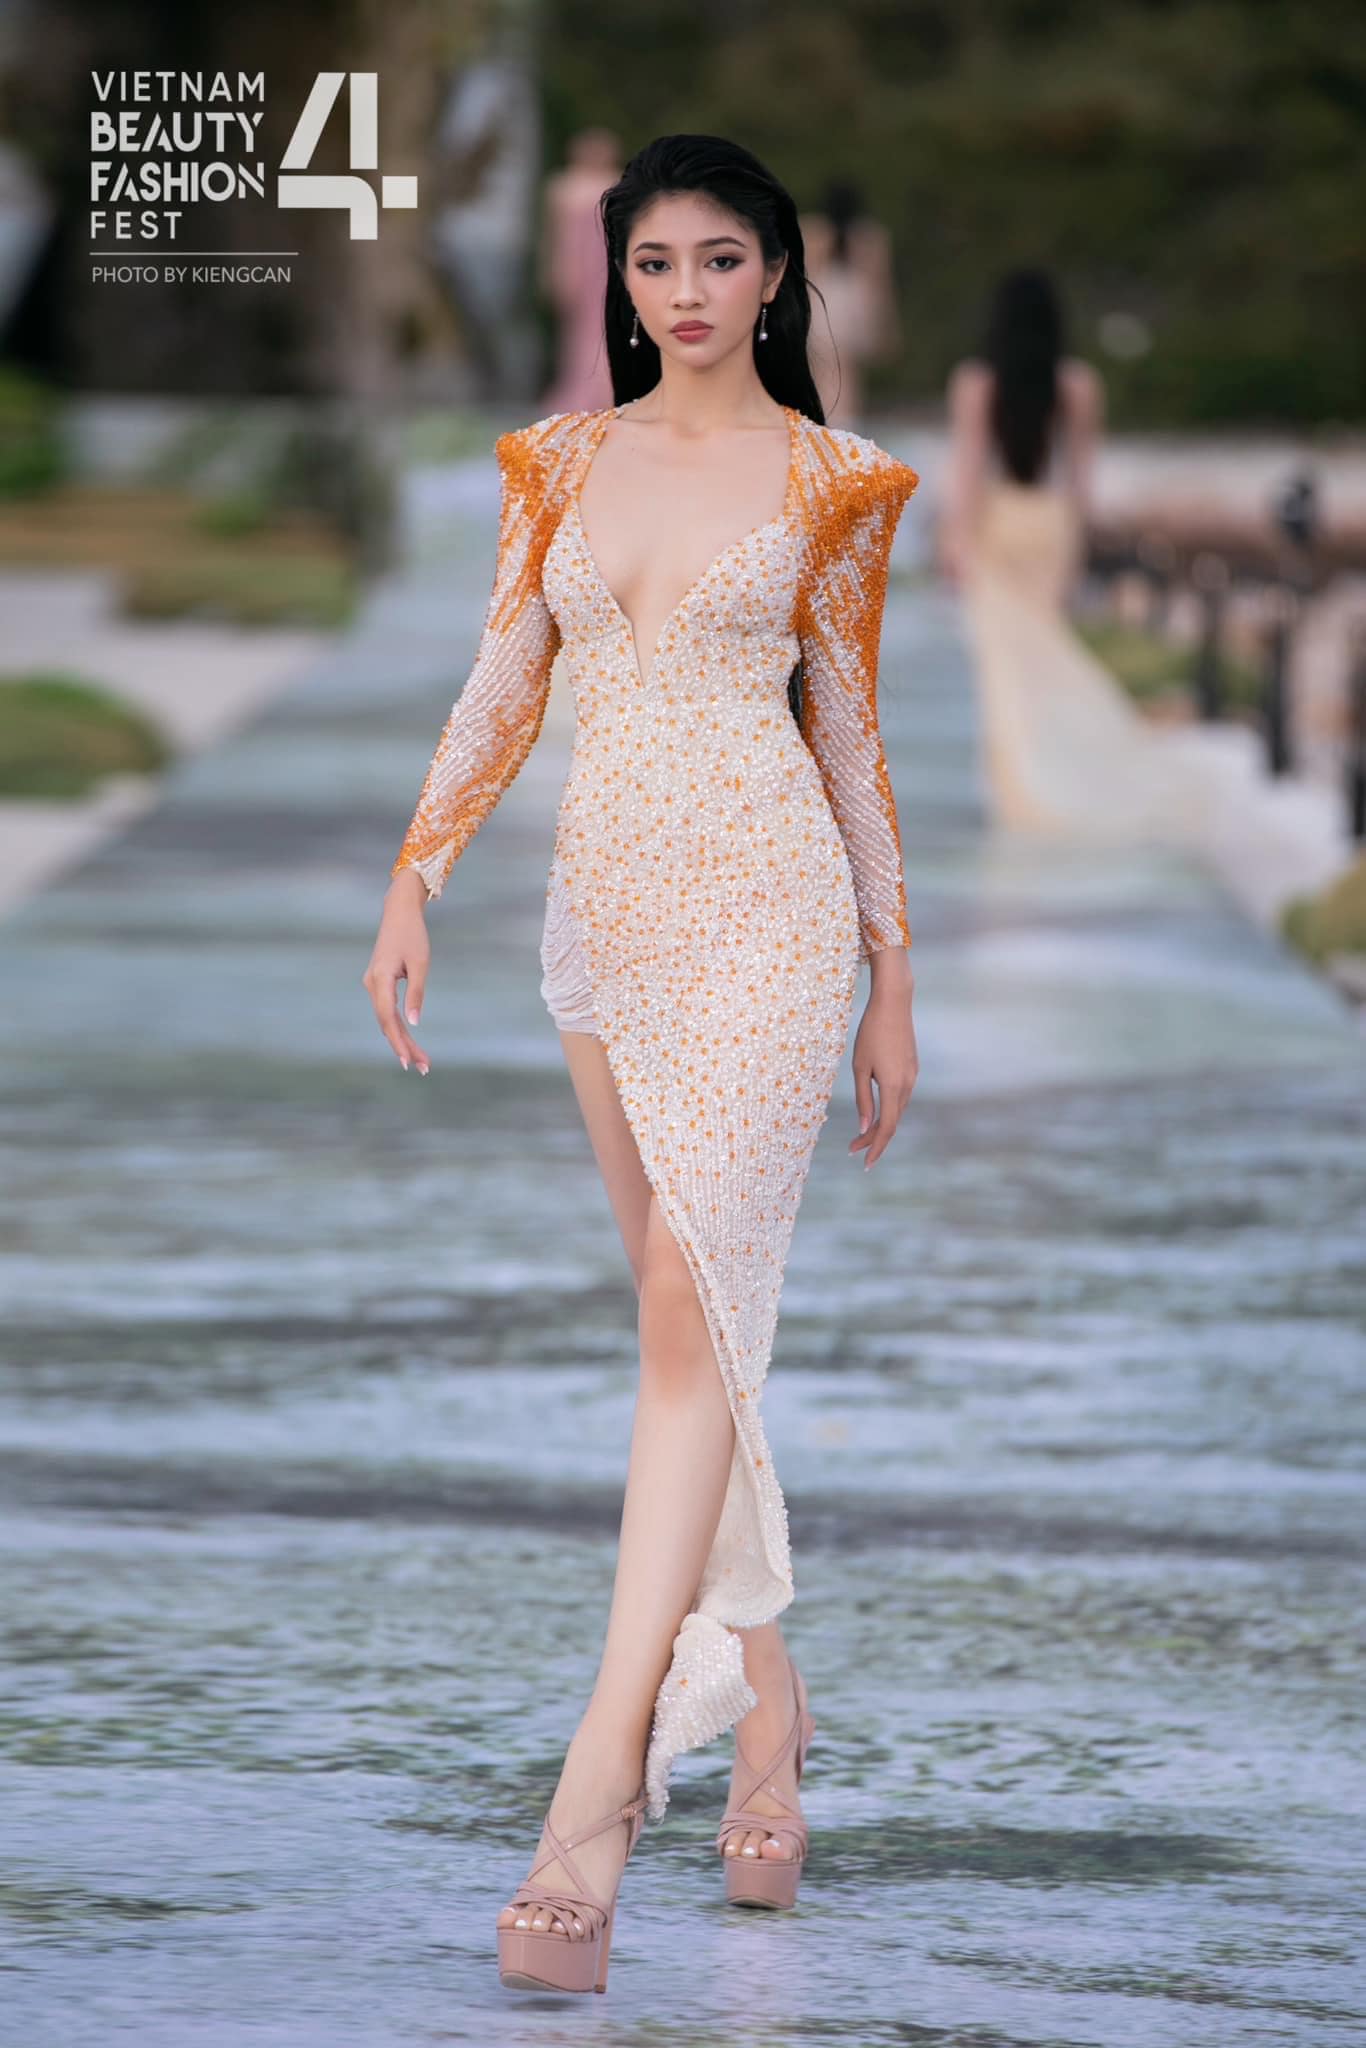 Tuổi thơ bất hạnh, nhiều biến cố của người đẹp Huỳnh Minh Kiên - Á hậu 2 Miss World Vietnam 2023 - ảnh 2